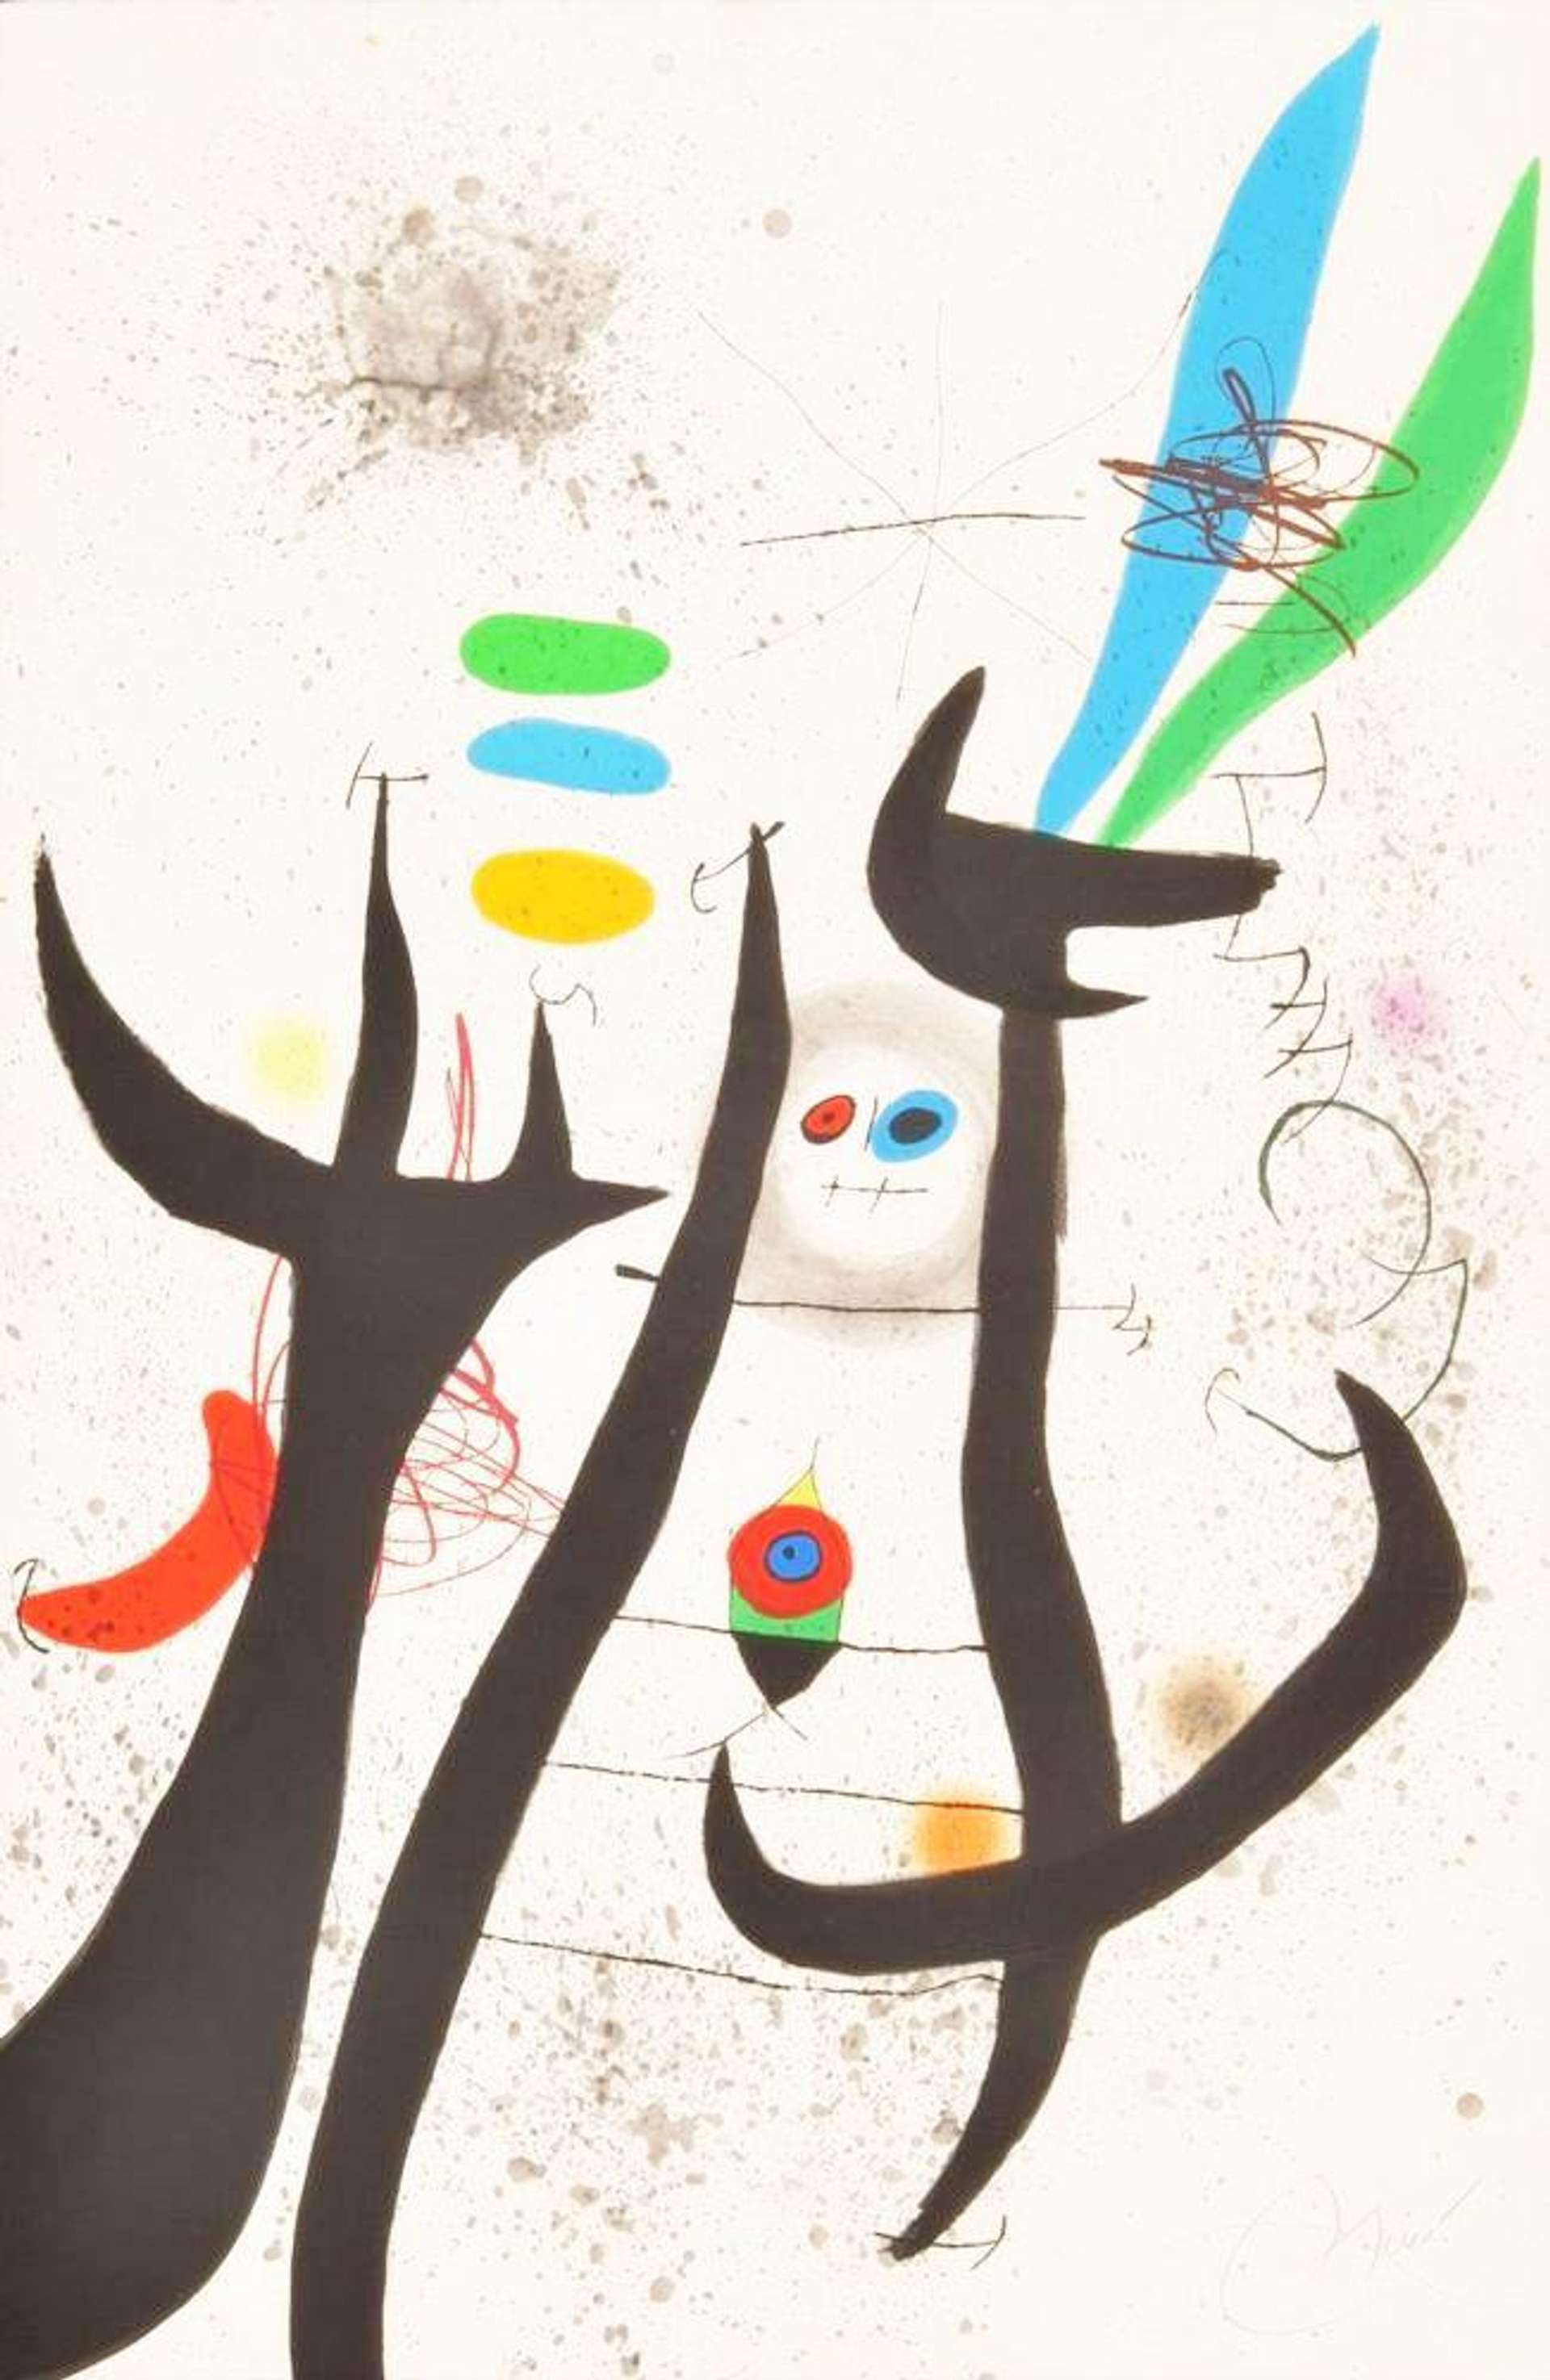 La Femme Arborescente - Signed Print by Joan Miró 1974 - MyArtBroker